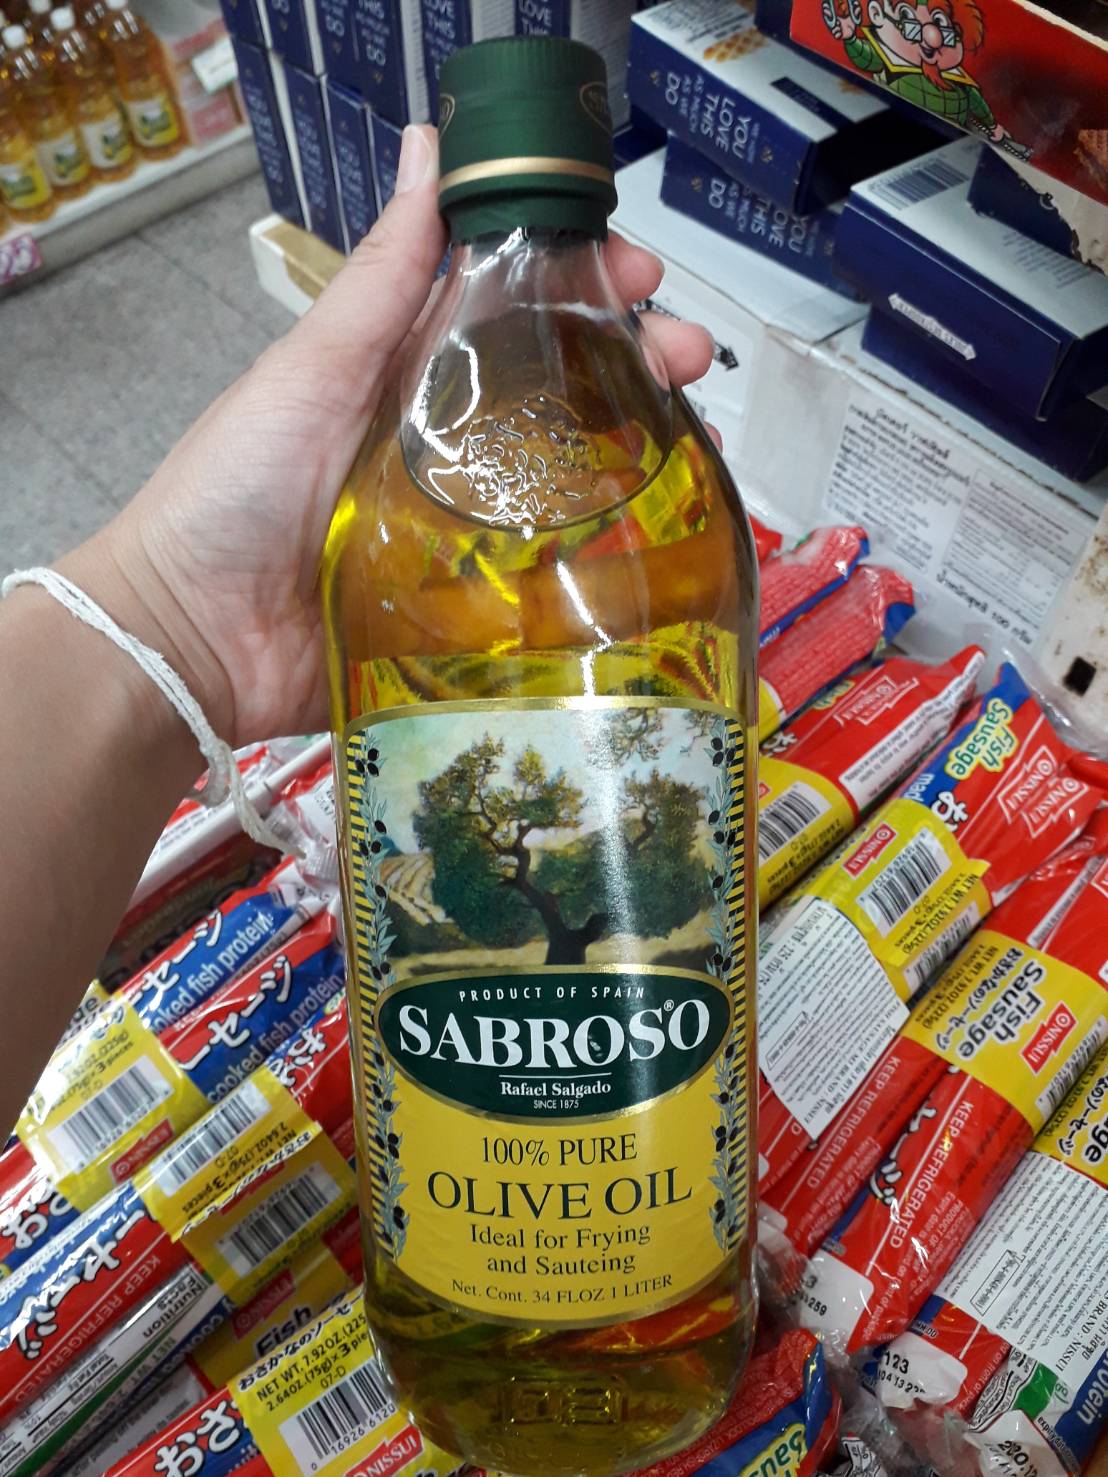 Sabroso Pure Olive Oil ซาโบรโซ เพียว โอลีฟ ออยล์ น้ำมันมะกอก 100% (น้ำมันมะกอกธรรมชาติผ่านกรรมวิธี) นำเข้าจากประเทศสเปน 1000 มล.